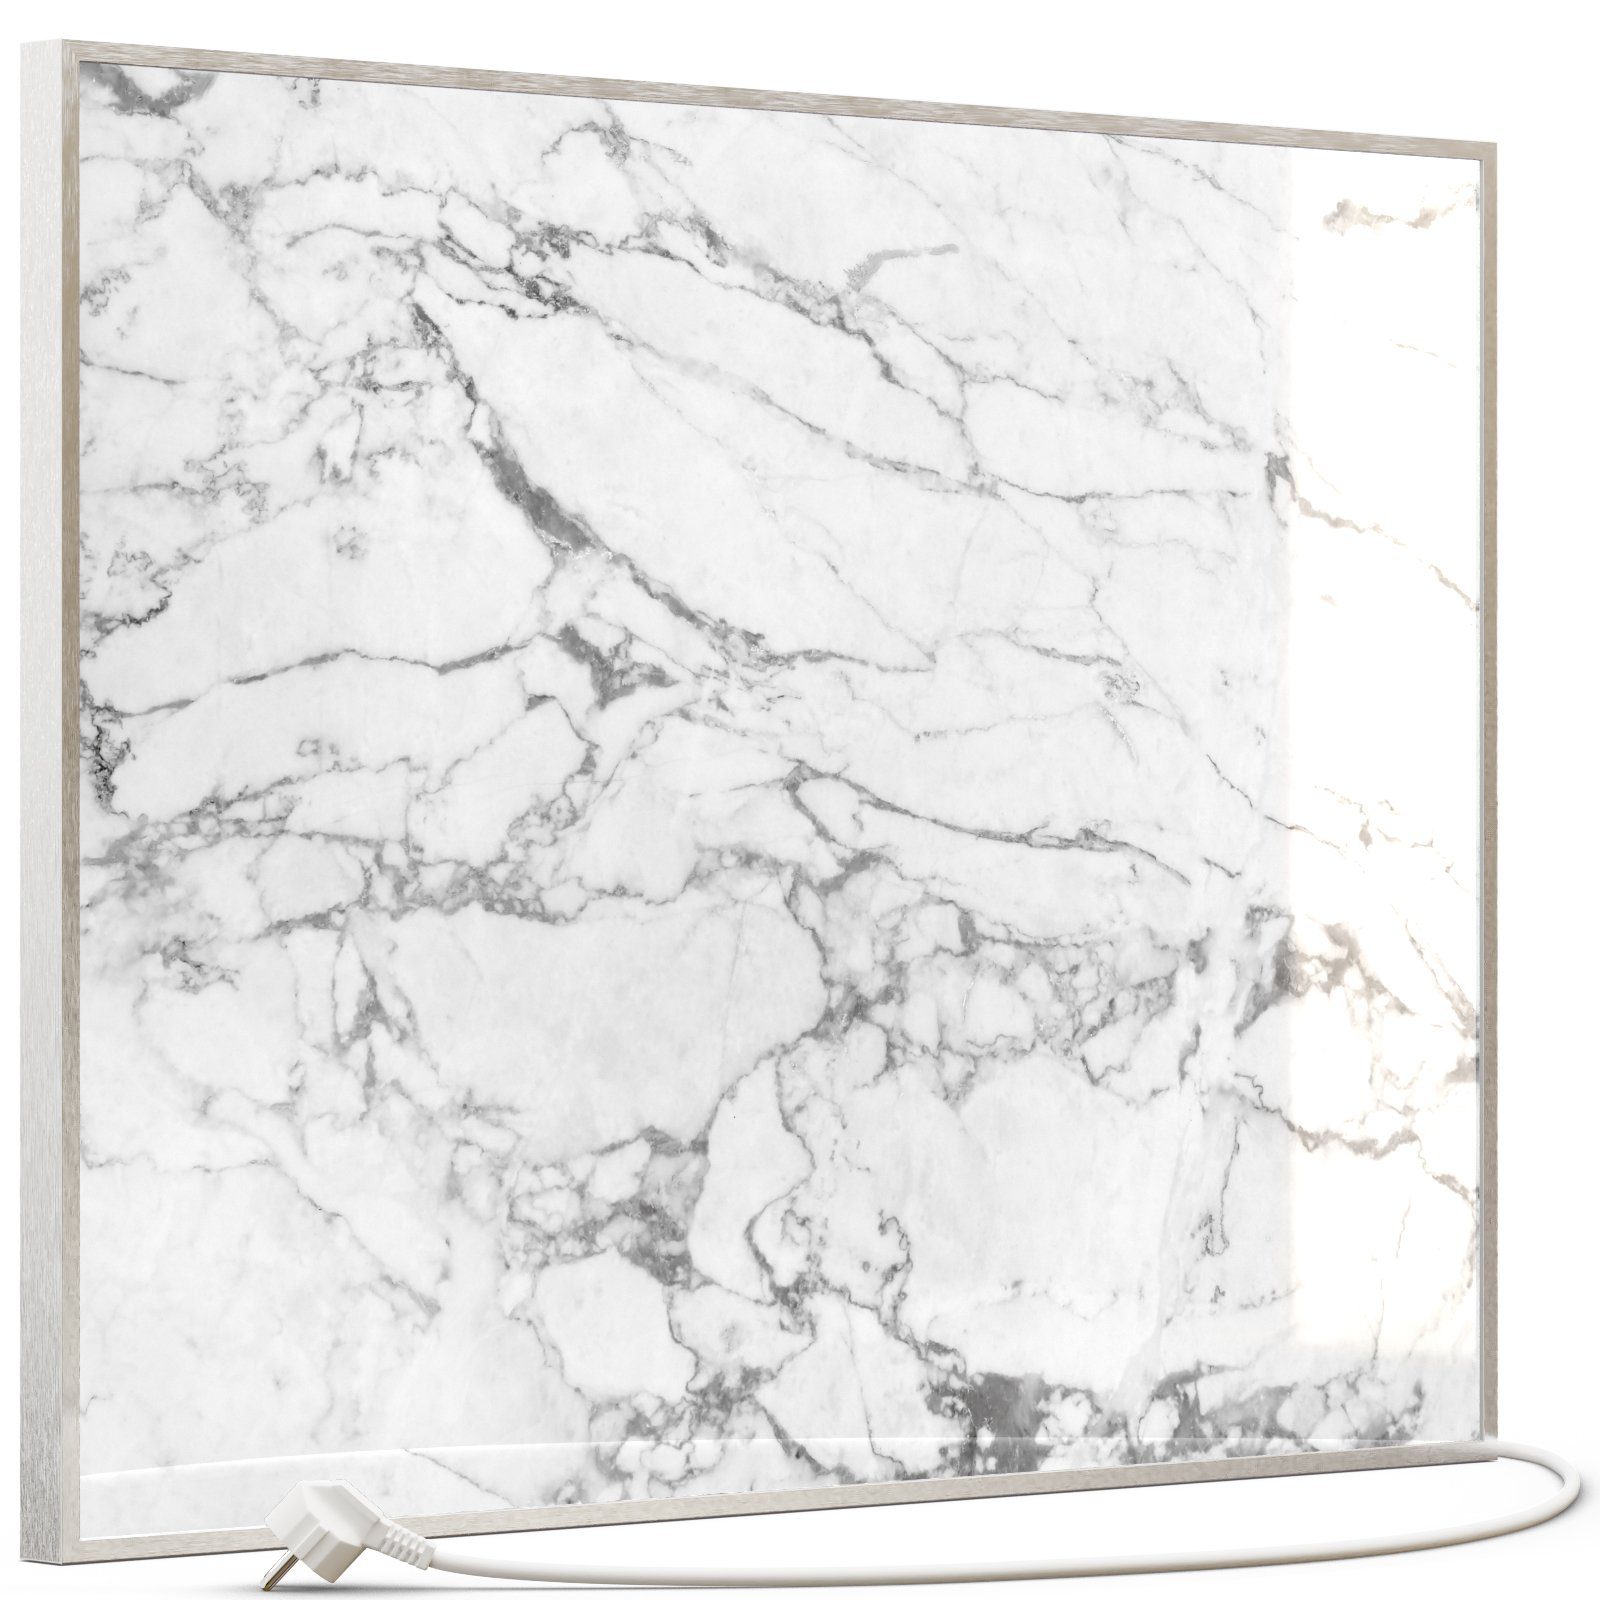 350W-1200W, 068 Infrarotheizung, Marmor Heizsysteme Inklusive Glas STEINFELD Weiß Bild Thermostat, Silber